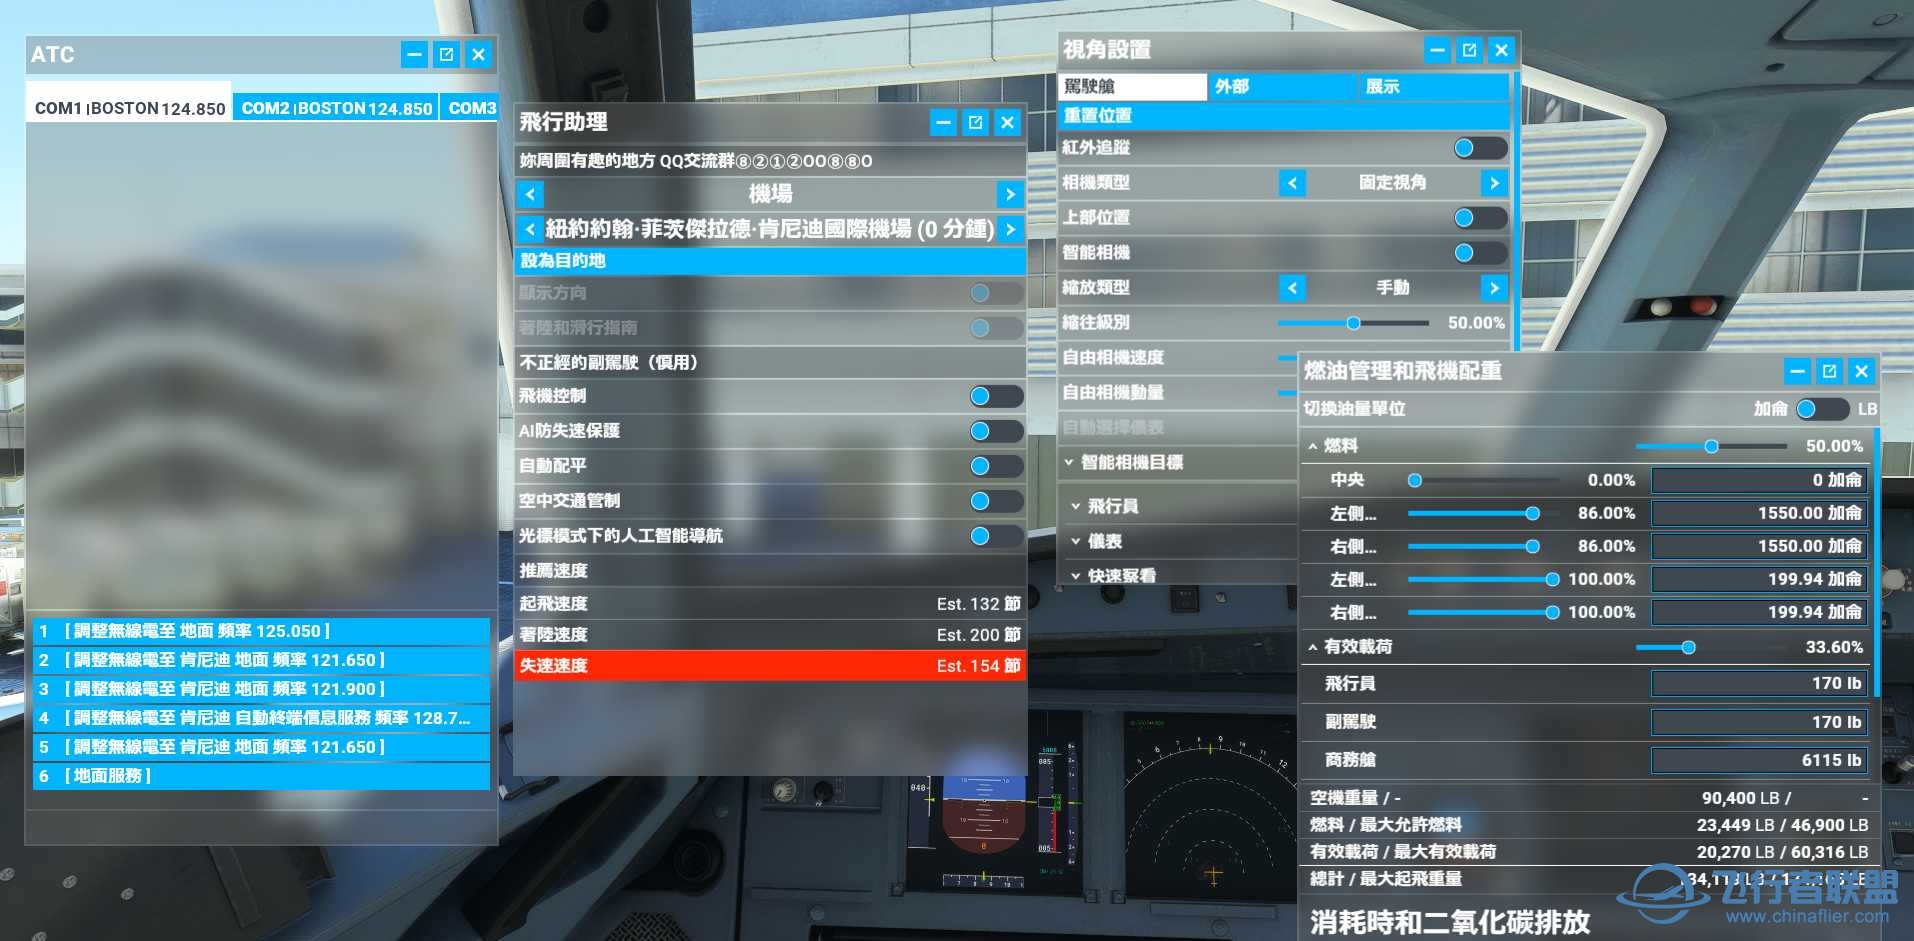 微软模拟飞行2020 1.18.14 繁体中文4.0发布版-8204 